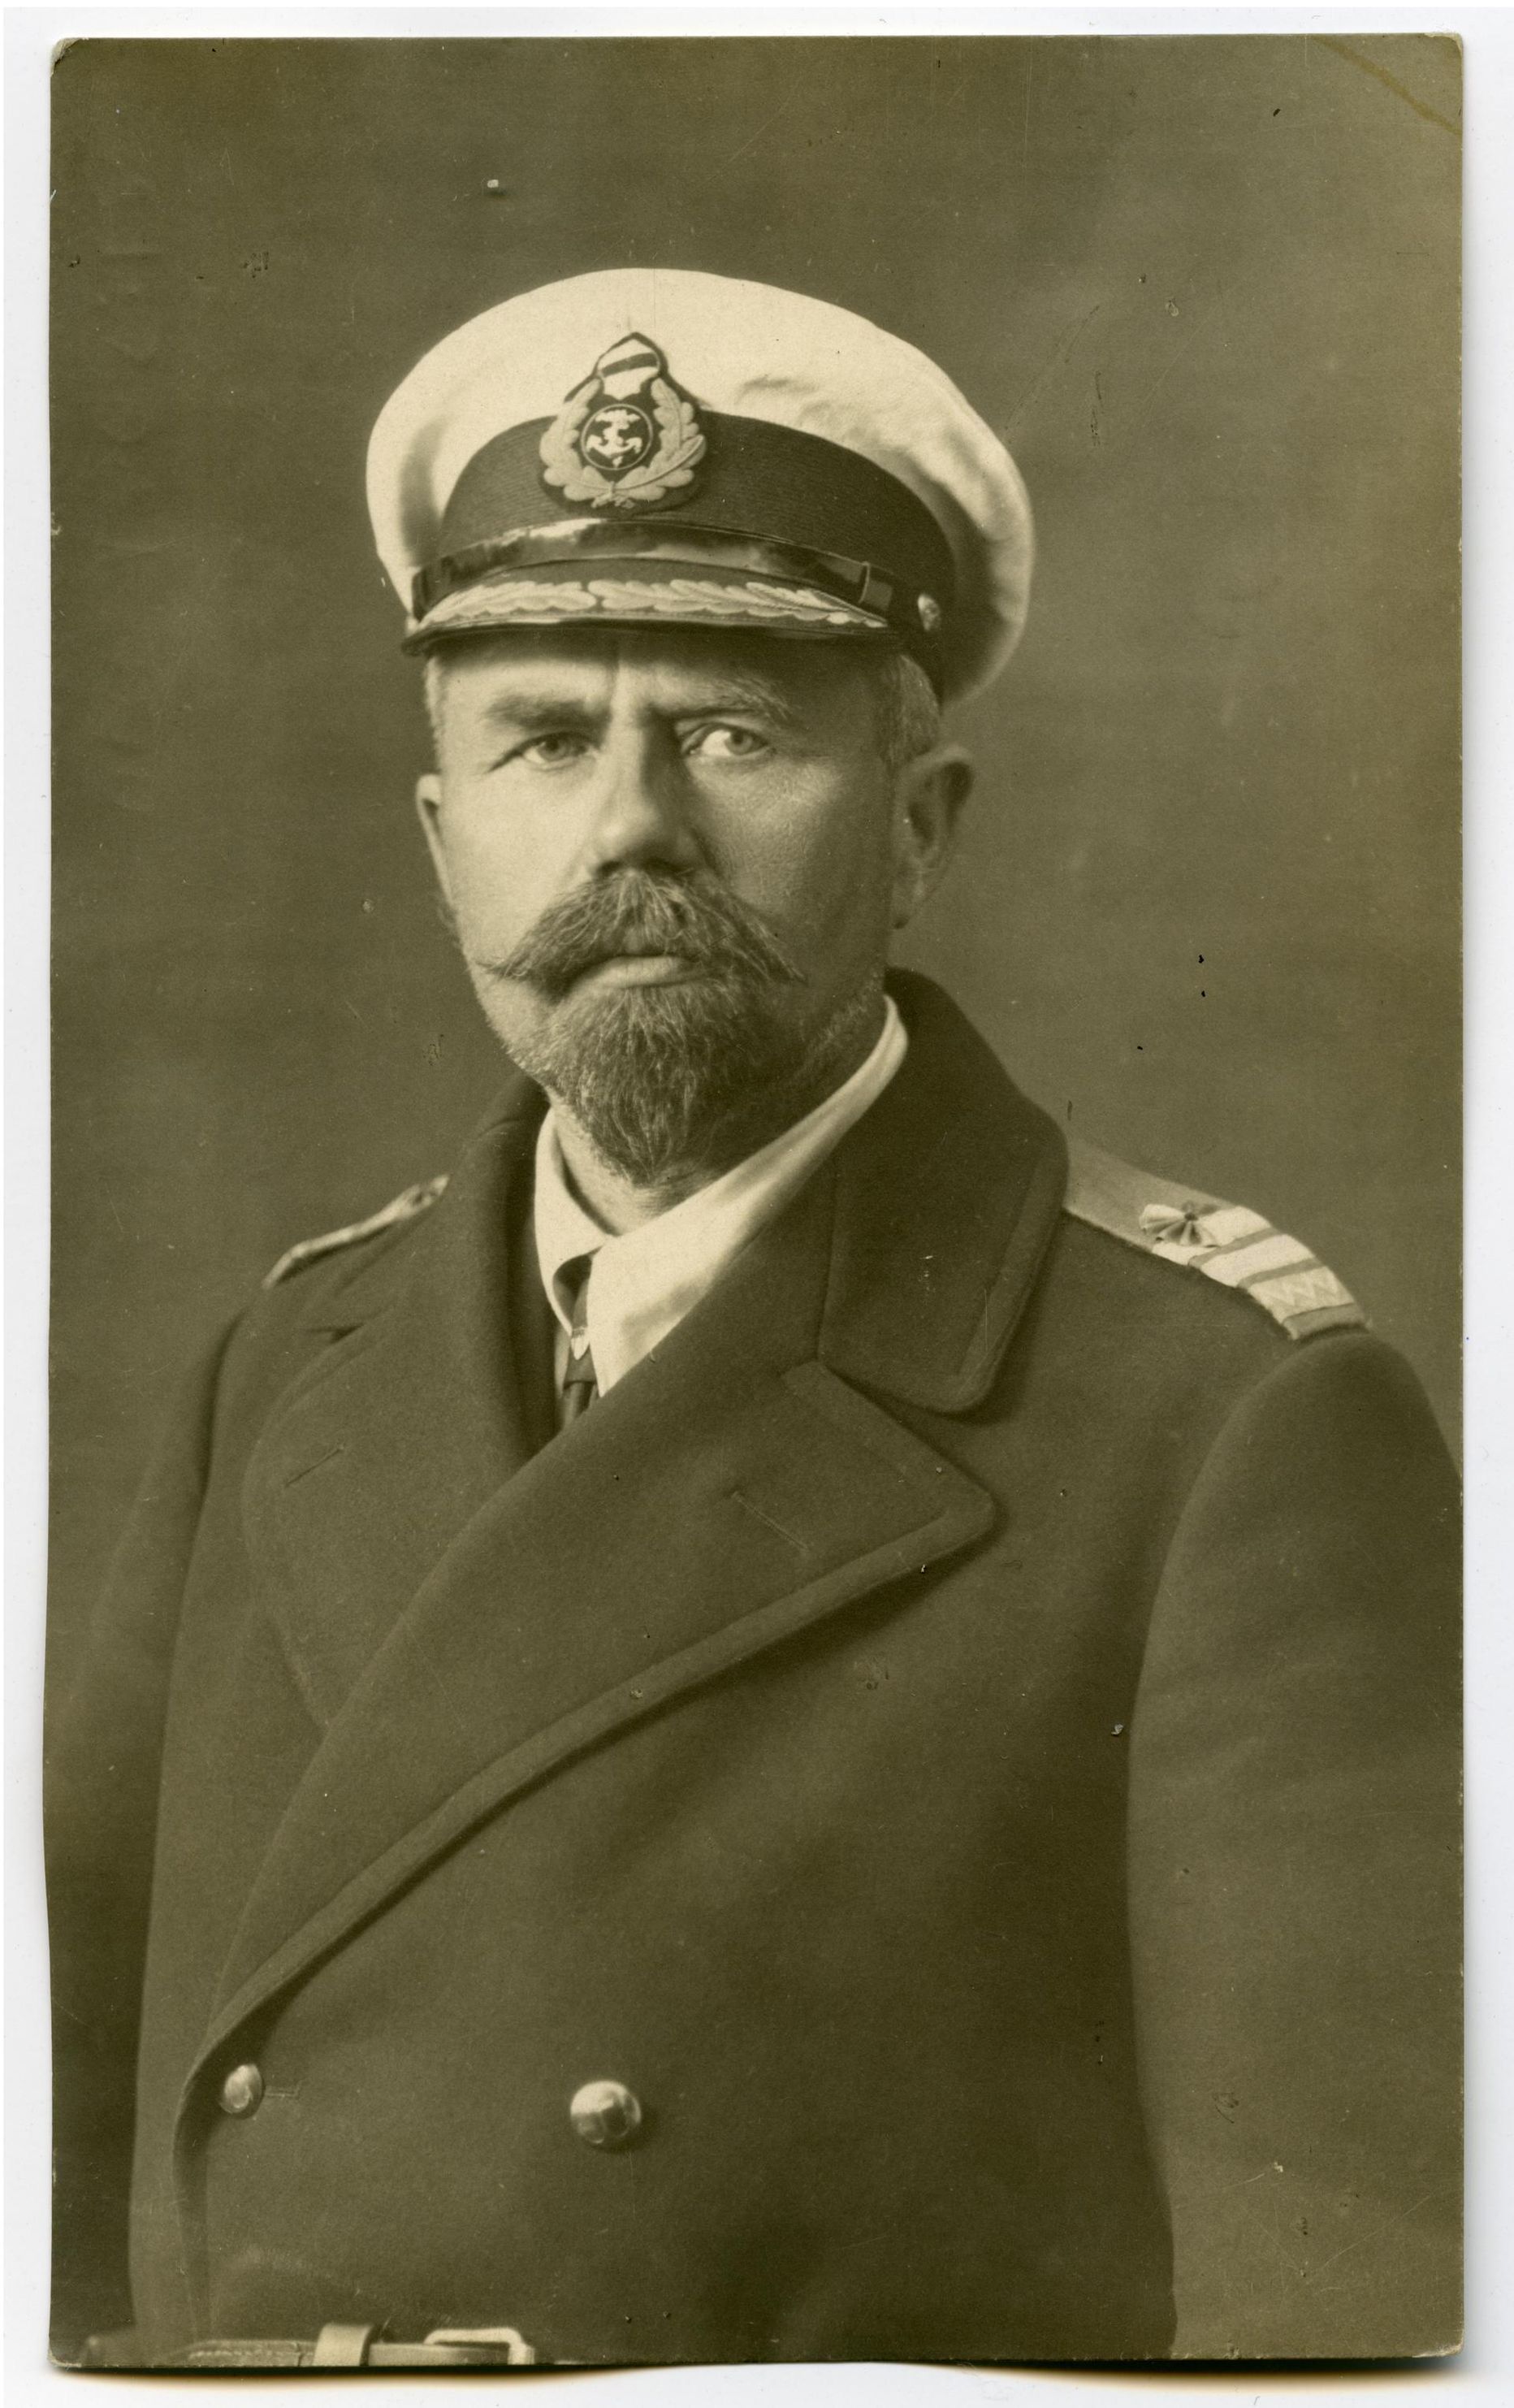 Eesti mereväe looja ja Vabadussõja-aegse juhi Johan Pitka kindel tahe oli 1944. aastal takistada Punaarmee edasitungi Eestis, kuid see ei õnnestunud.